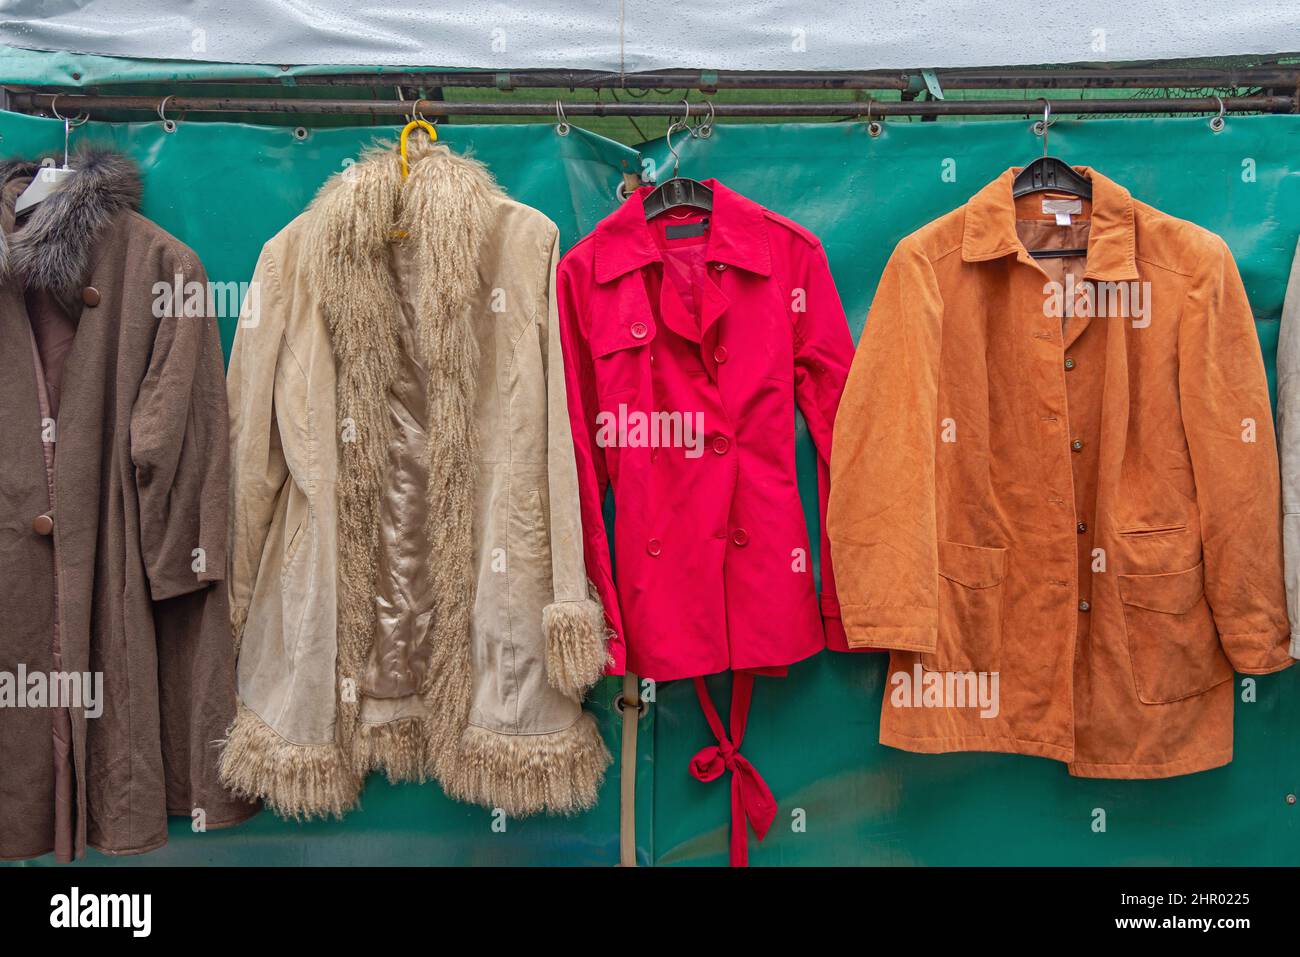 Roter Trenchcoat und Jackets auf dem Flohmarkt Stockfoto